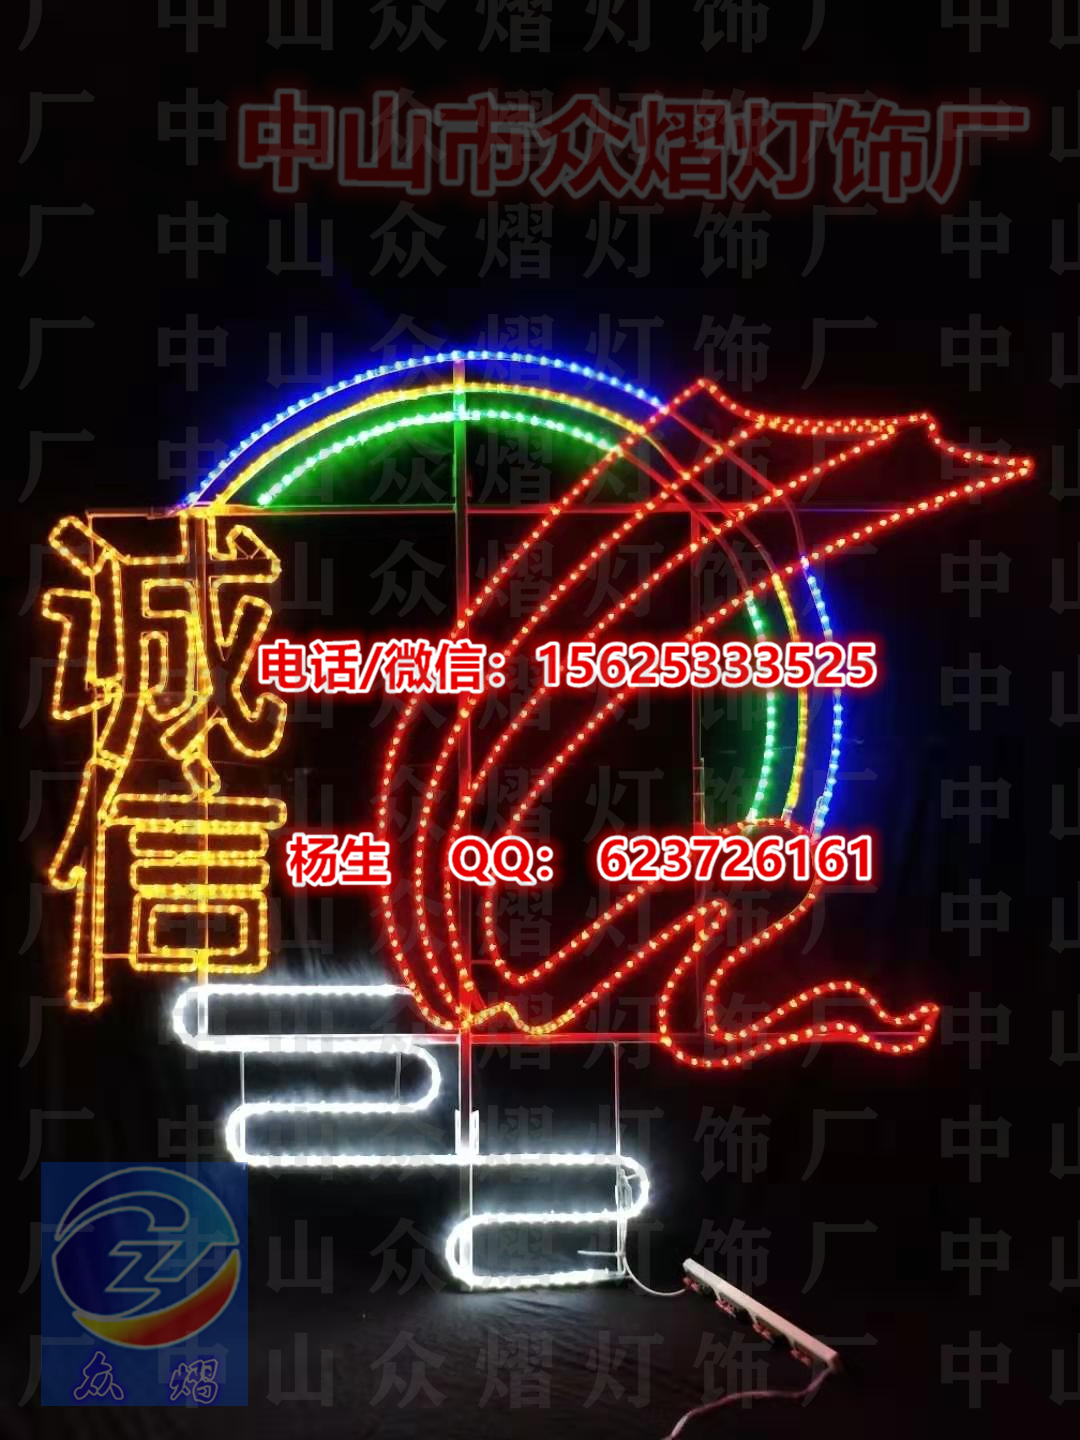 中山市路灯杆双面发光中国结 LED厂家LED双面灯 路灯杆双面发光中国结 LED过街灯 户外亮化工程景观灯